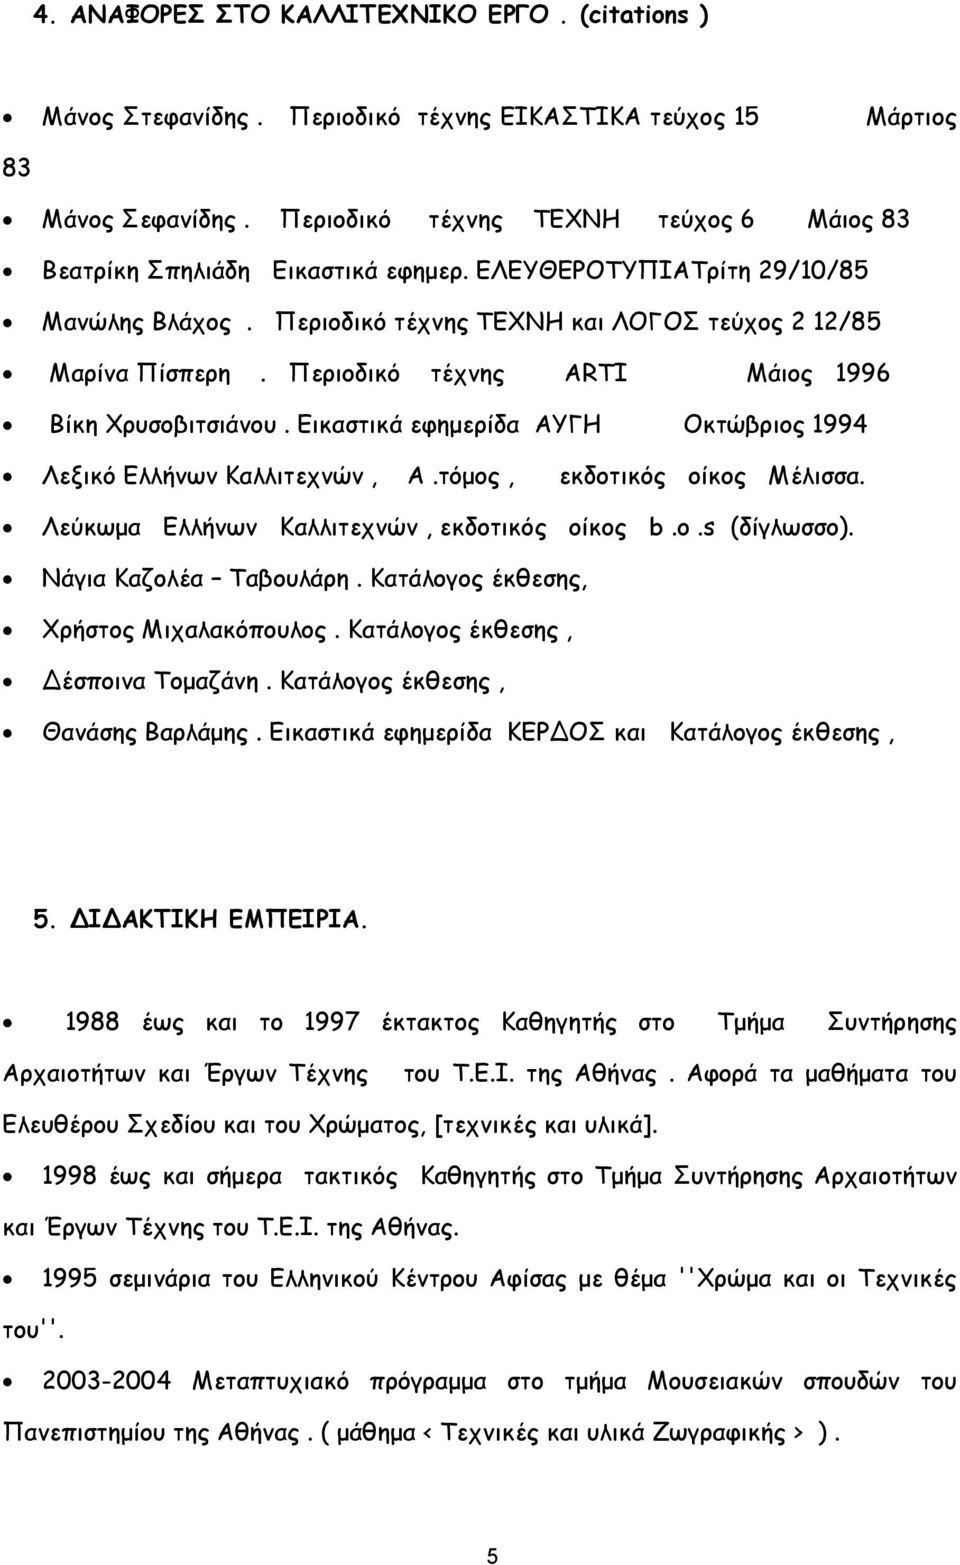 Περιοδικό τέχνης ARTI Μάιος 1996 Βίκη Χρυσοβιτσιάνου. Εικαστικά εφημερίδα ΑΥΓΗ Οκτώβριος 1994 Λεξικό Ελλήνων Καλλιτεχνών, Α.τόμος, εκδοτικός οίκος Μέλισσα.